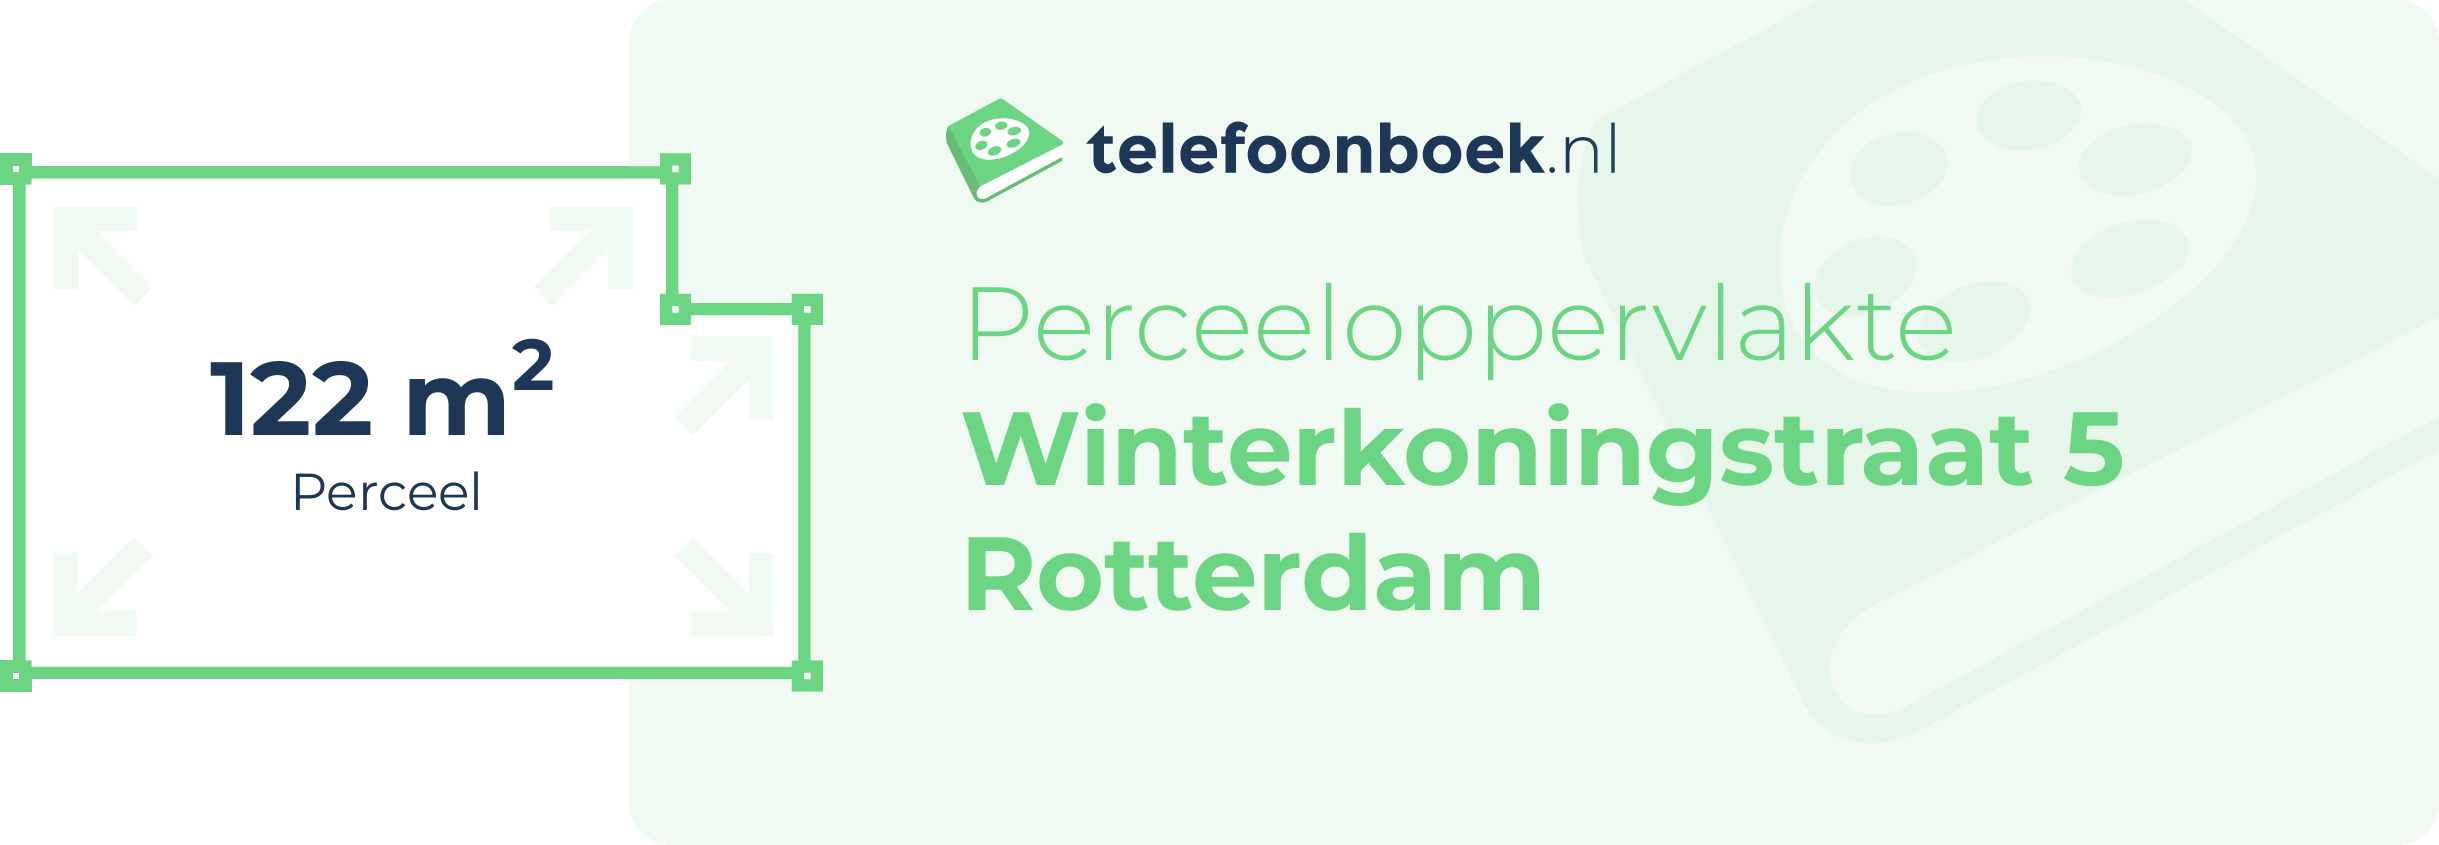 Perceeloppervlakte Winterkoningstraat 5 Rotterdam